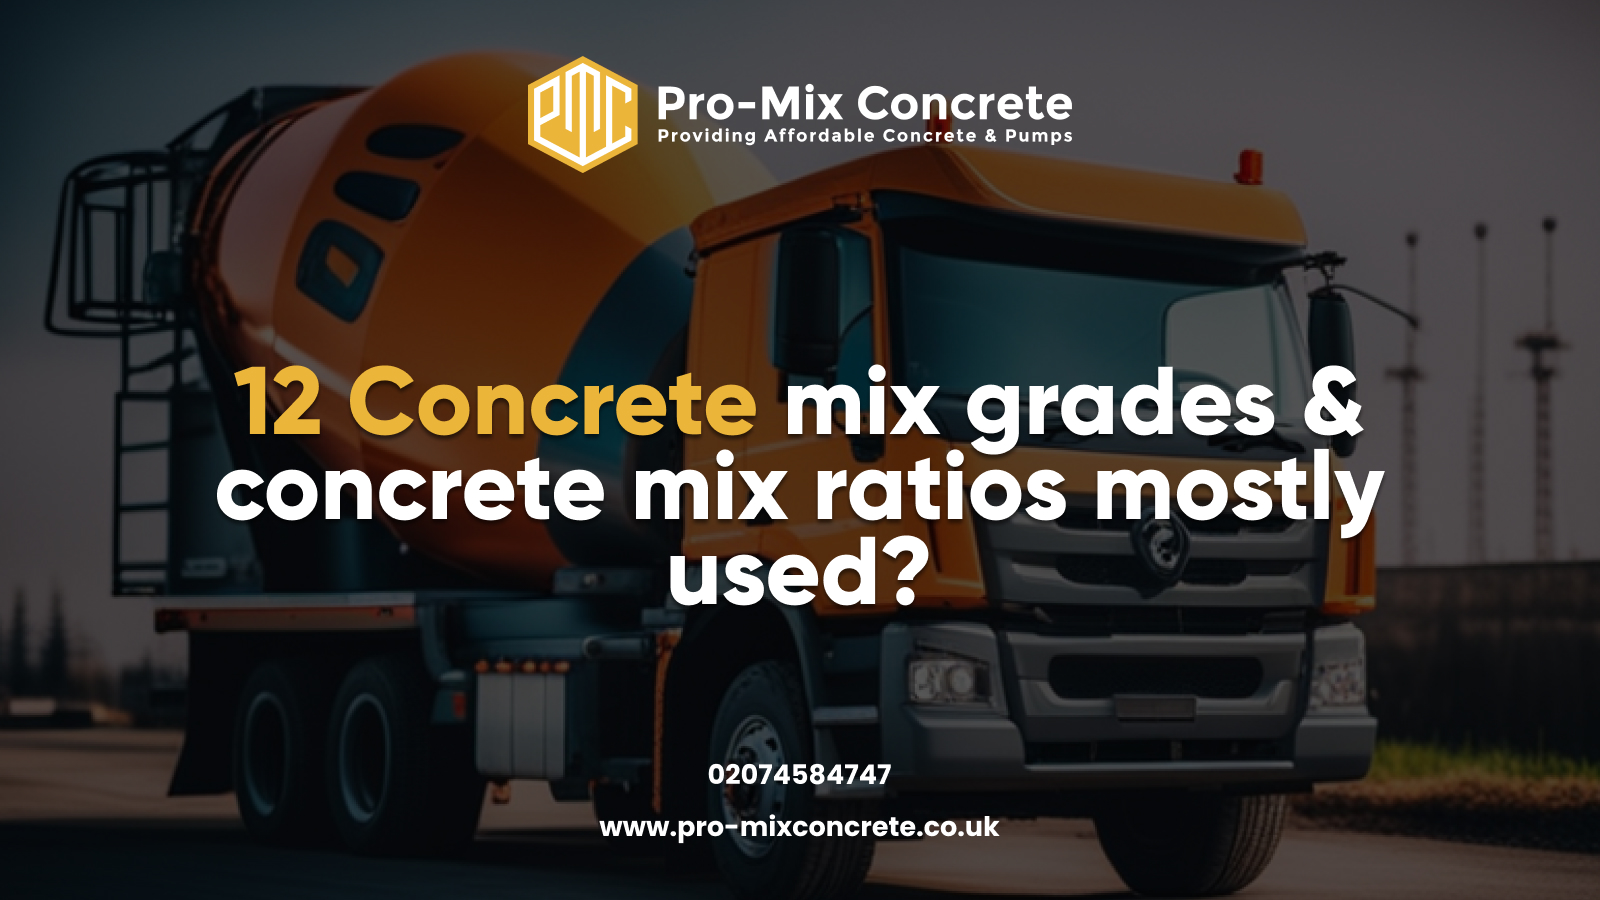 Pro-Mix Concrete